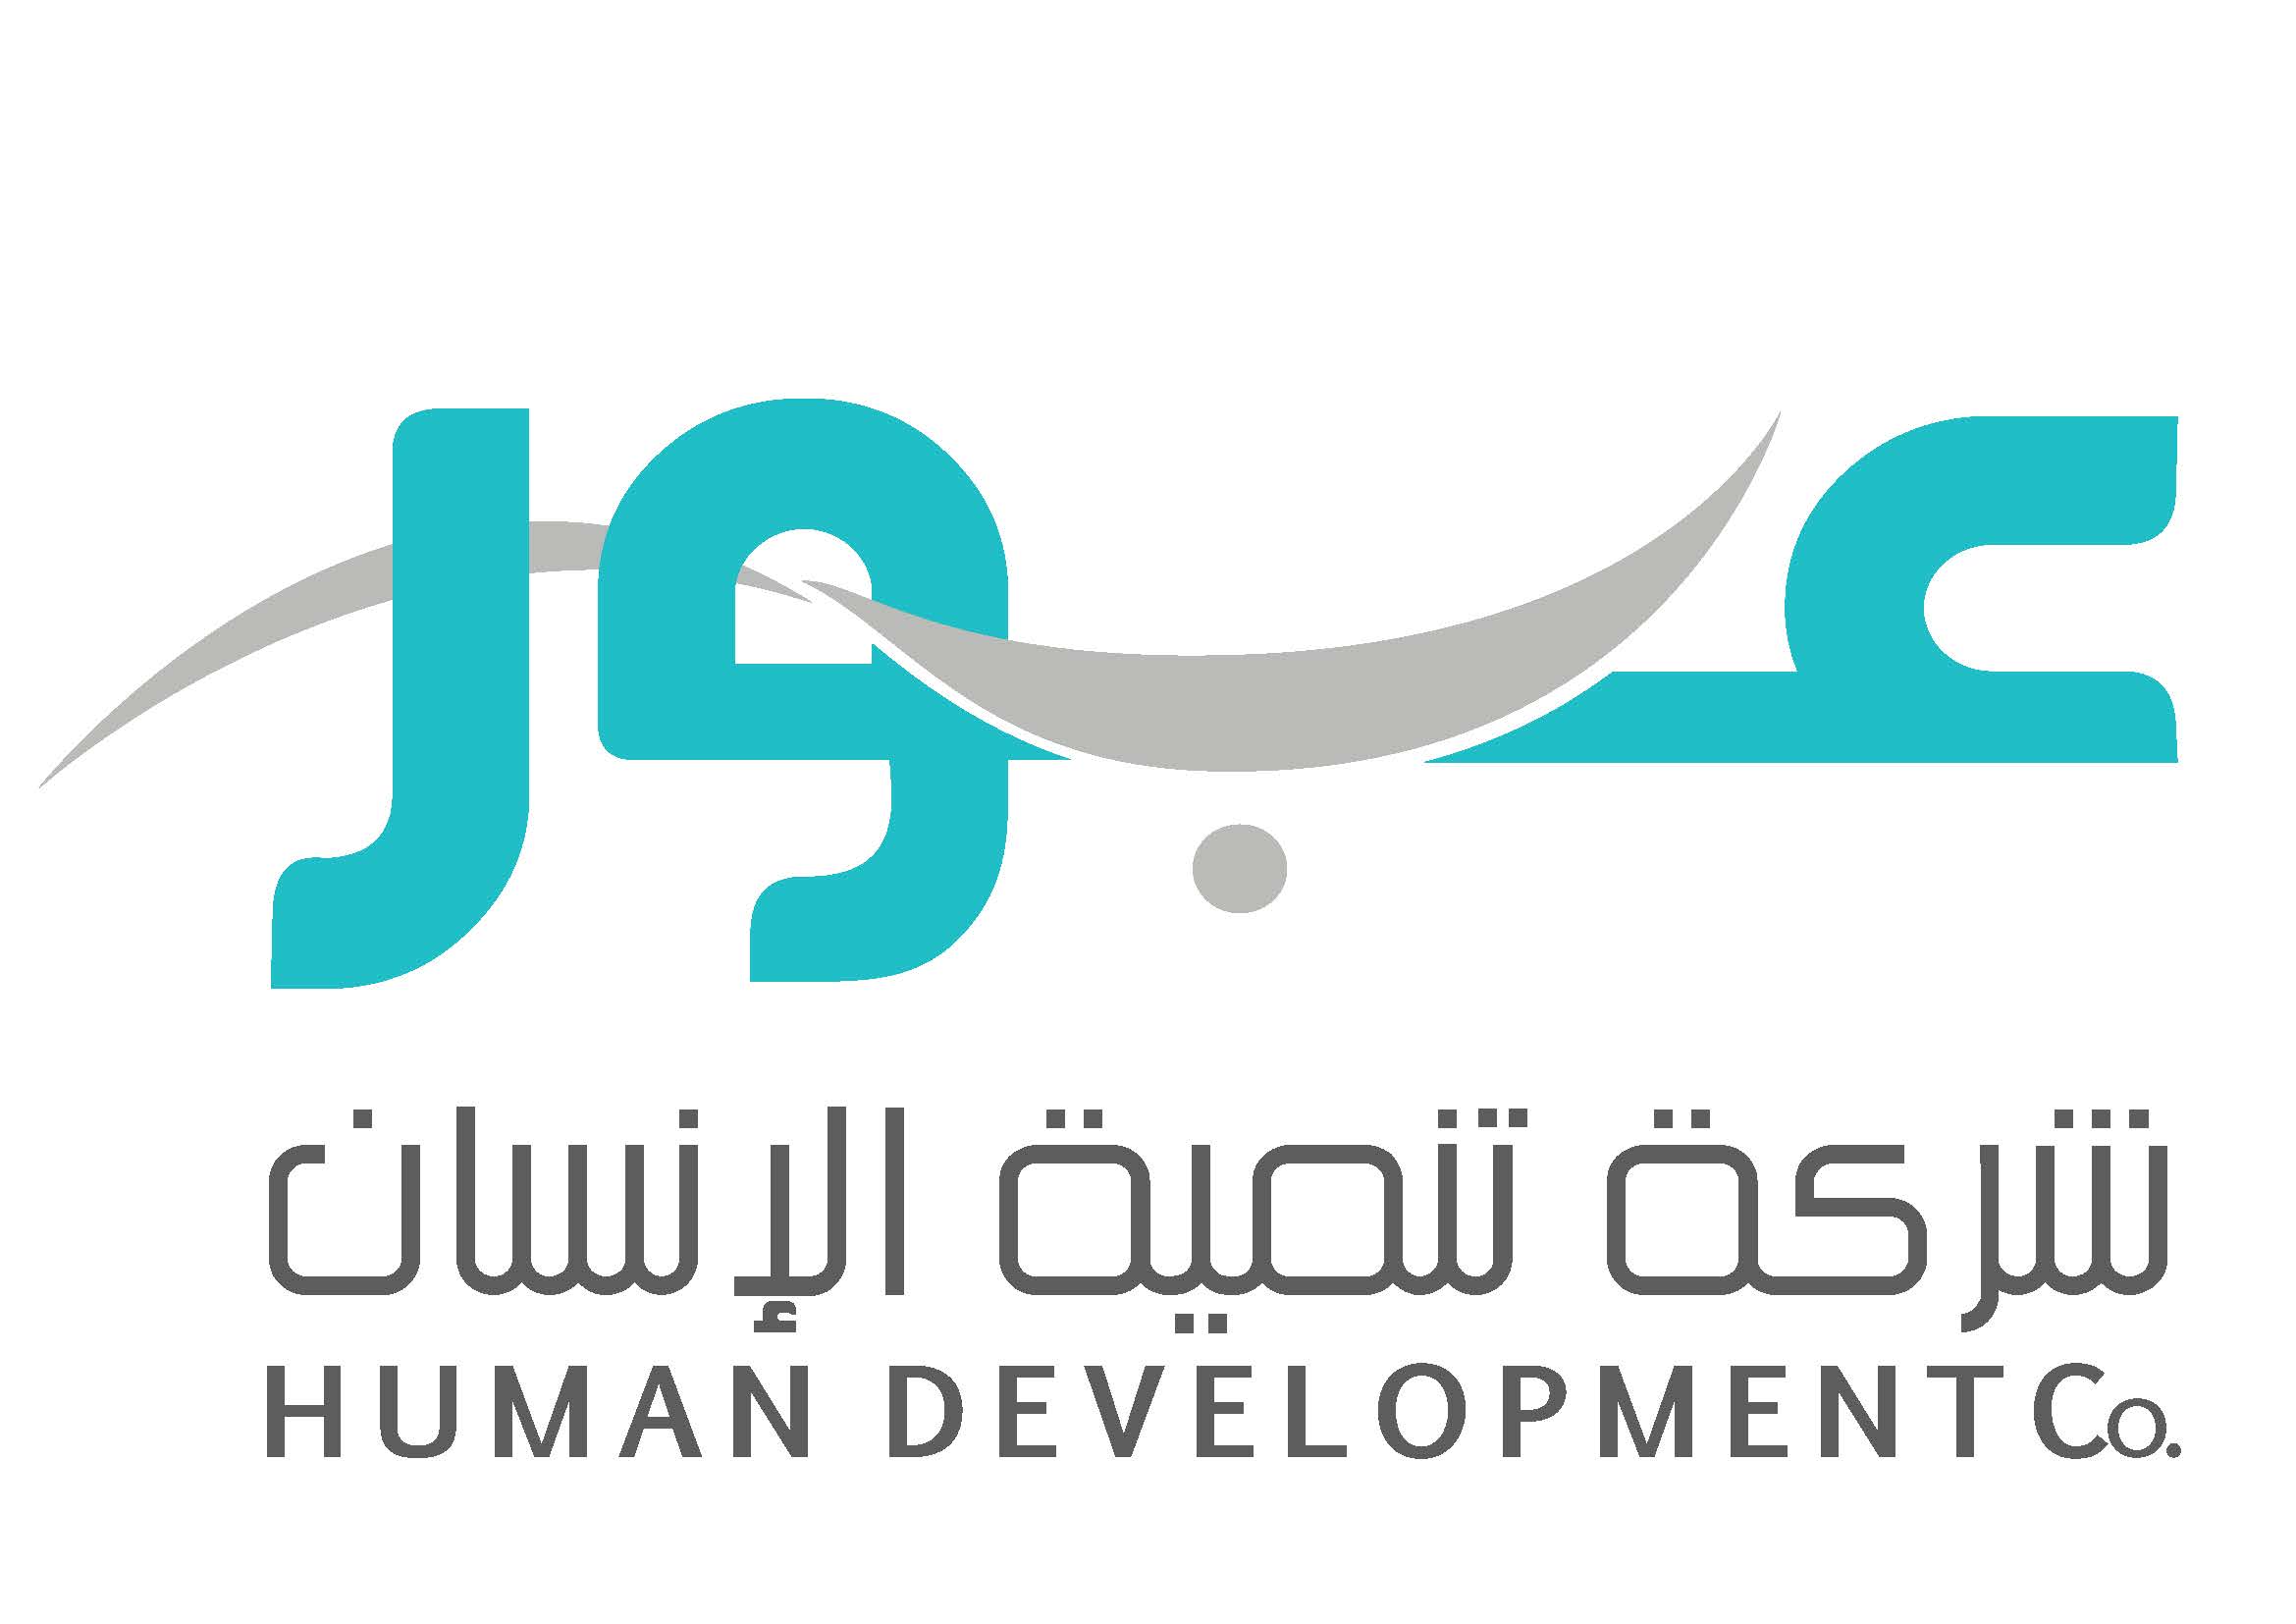  شركة تنمية الإنسان (عبور) توفر وظائف تعليمية وصحية شاغرة بمدينة الرياض